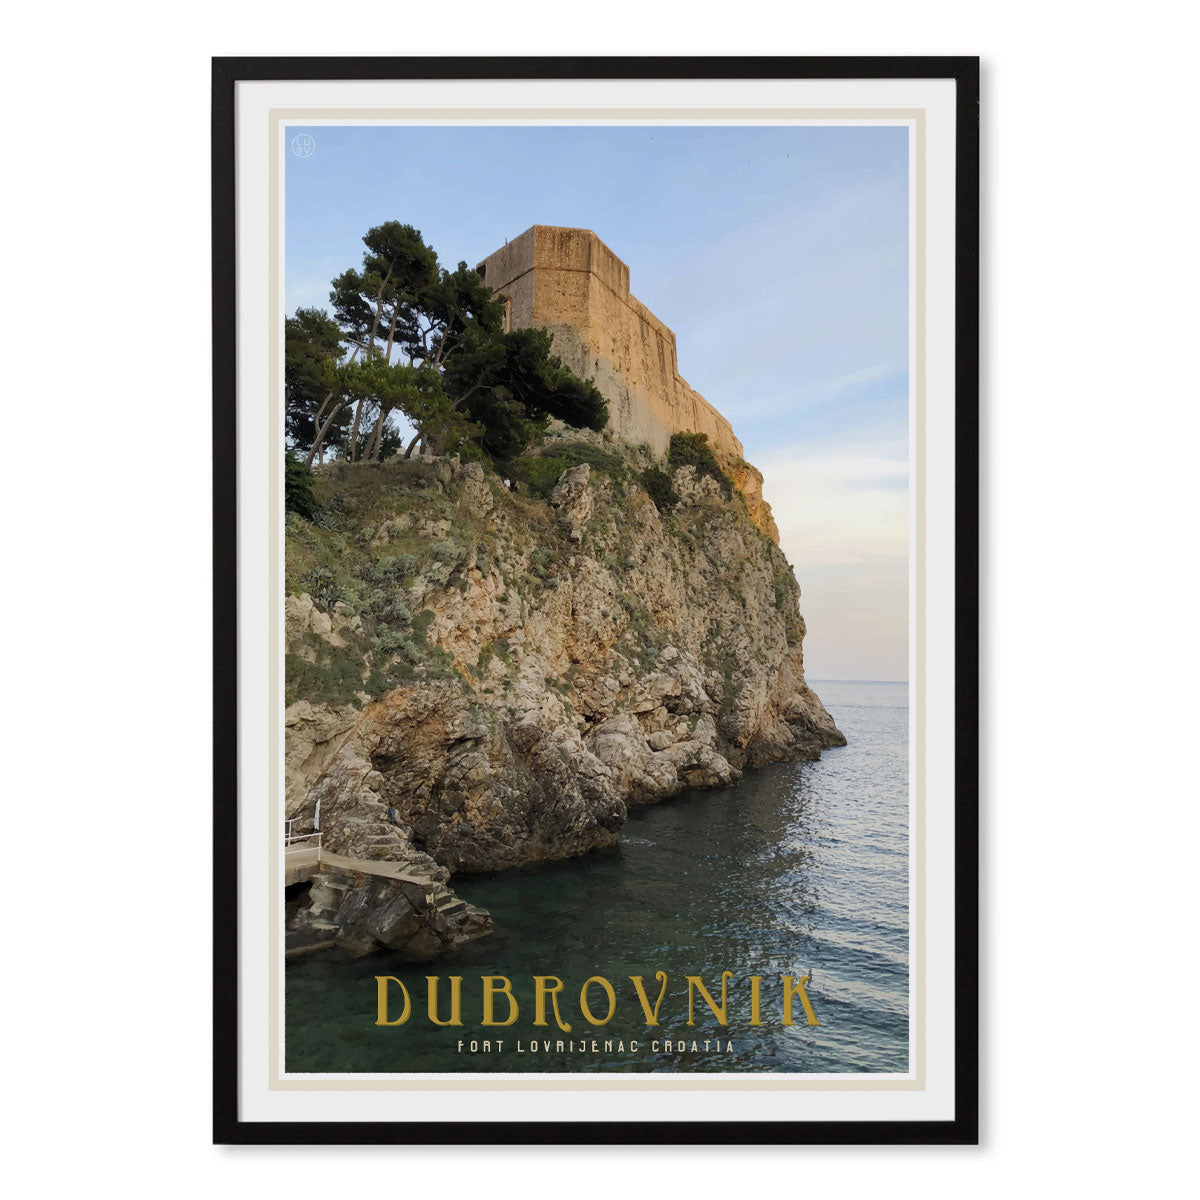 Dubrovnik vintage travel style black framed poster by places we luv